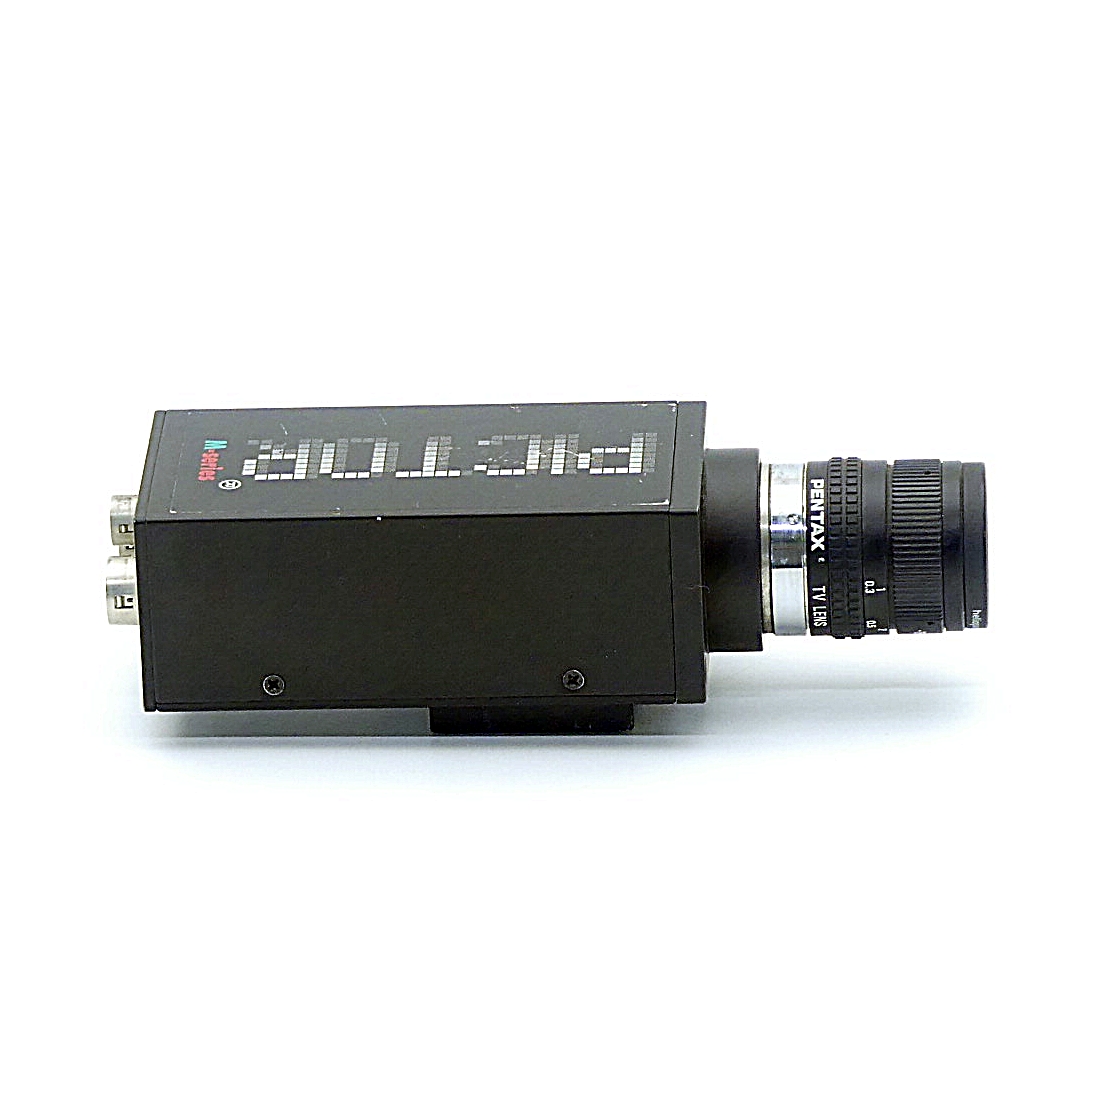 Industriekamera VC2028 mit Pentax Objektiv 16 mm 